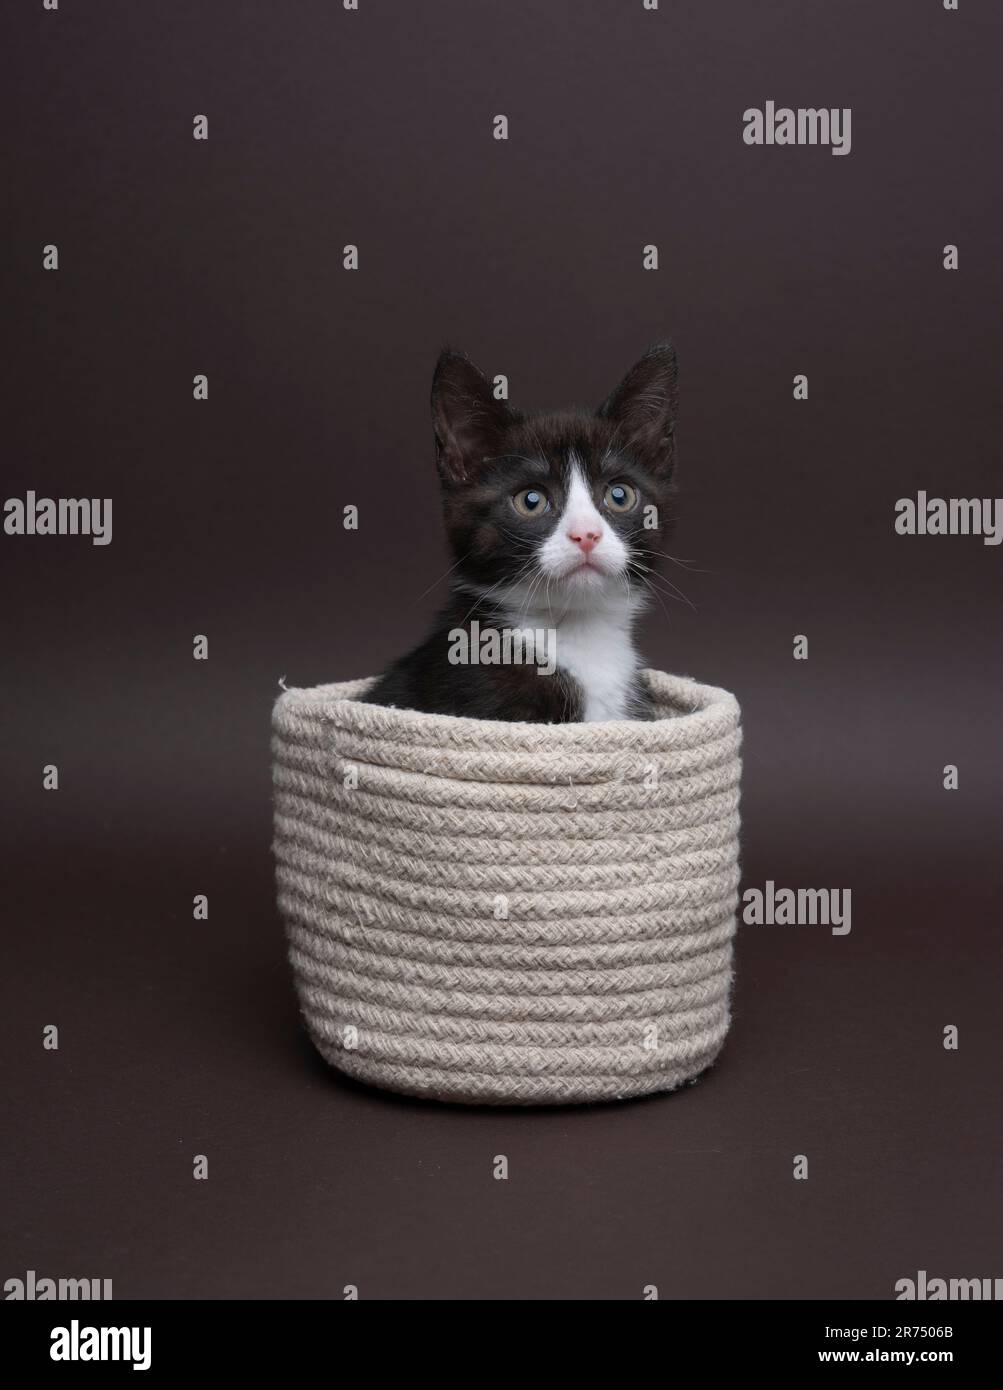 Un gattino bianco e nero seduto all'interno di un cesto su uno sfondo scuro, fotografia scattata in uno studio, il gatto sta guardando curiosamente Foto Stock